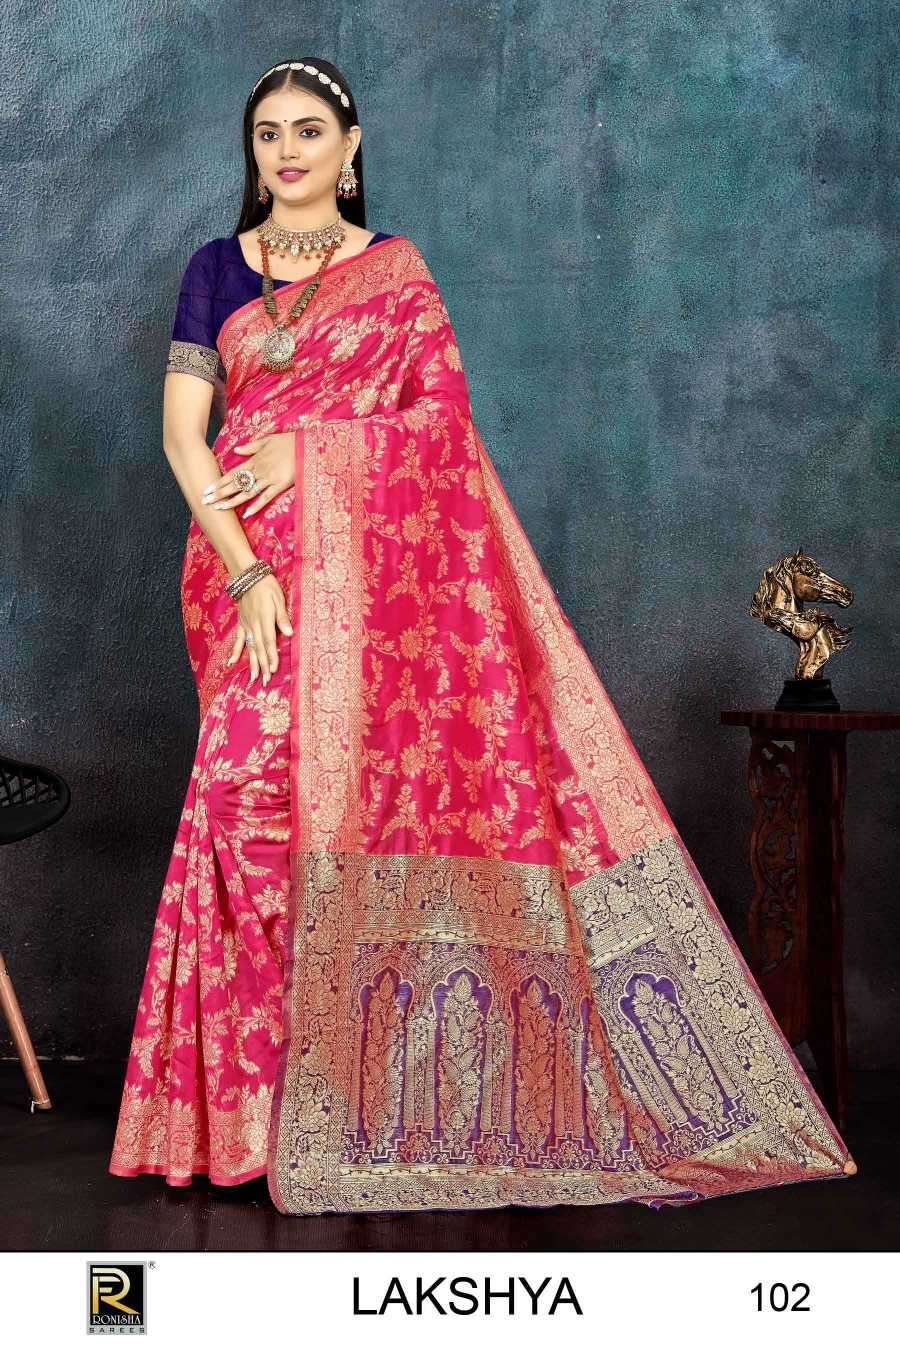 ranjna saree lakshya series 101-106 banarasi silk saree